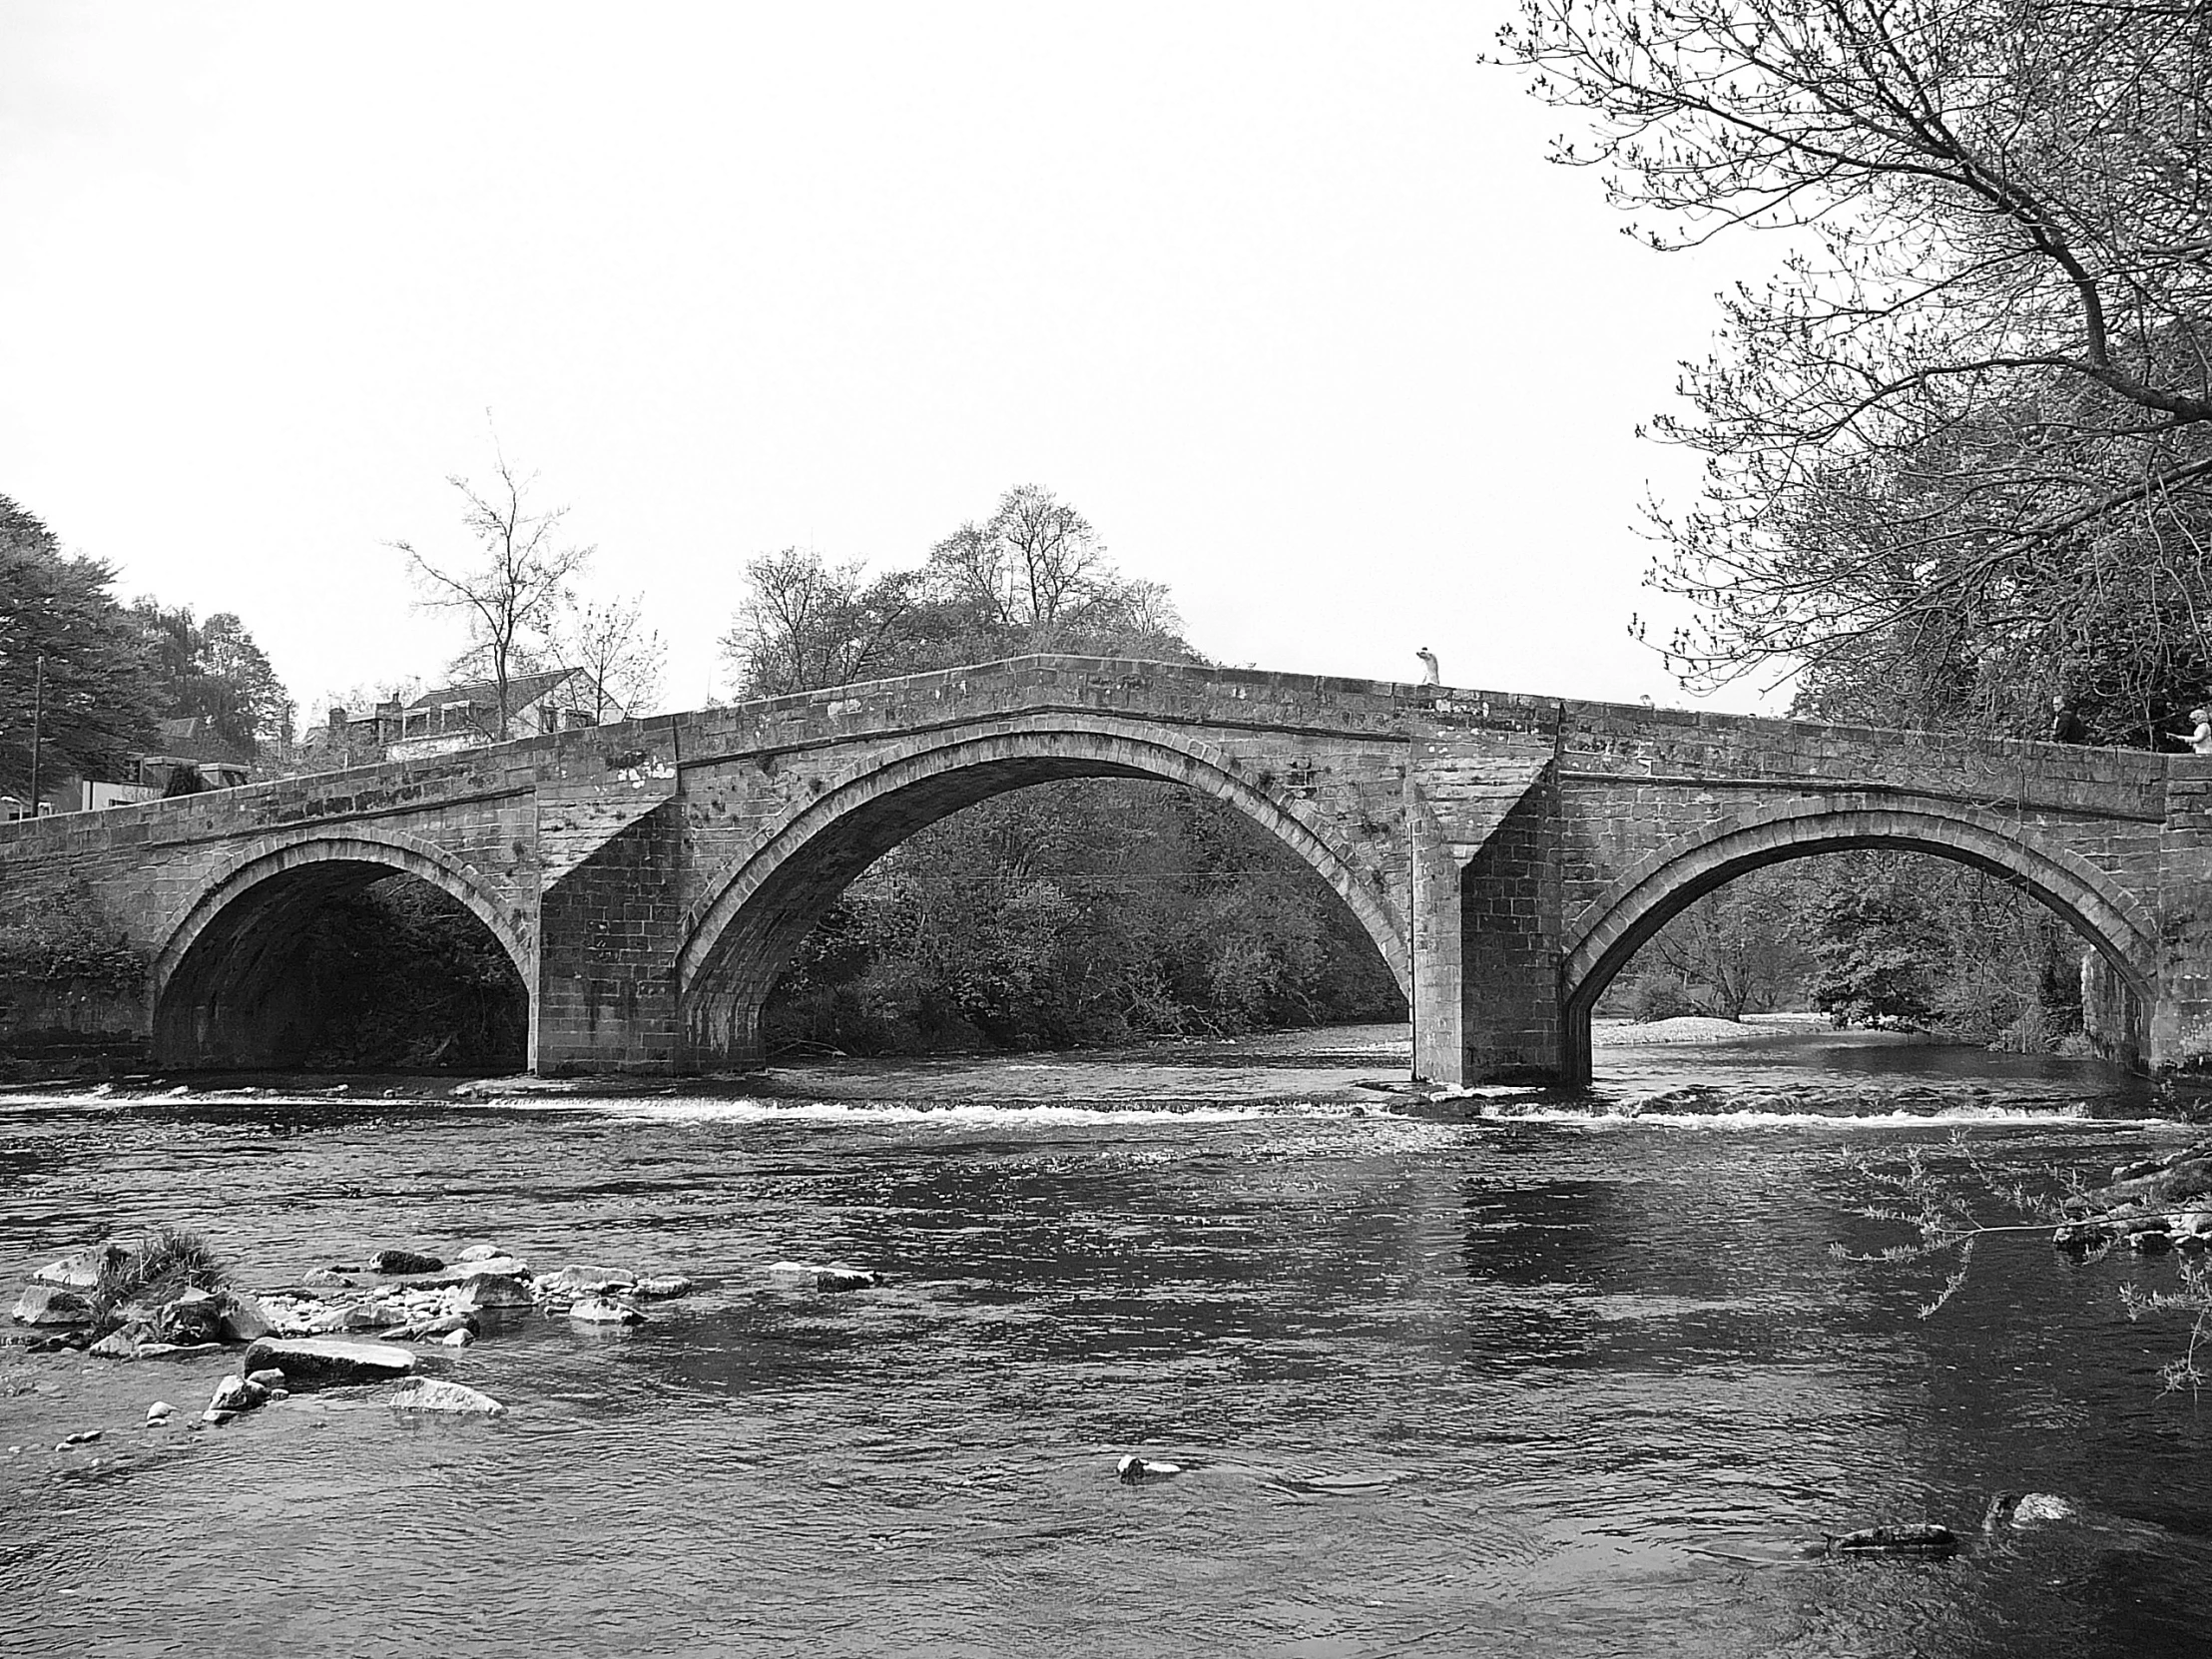 a black and white po of a stone bridge